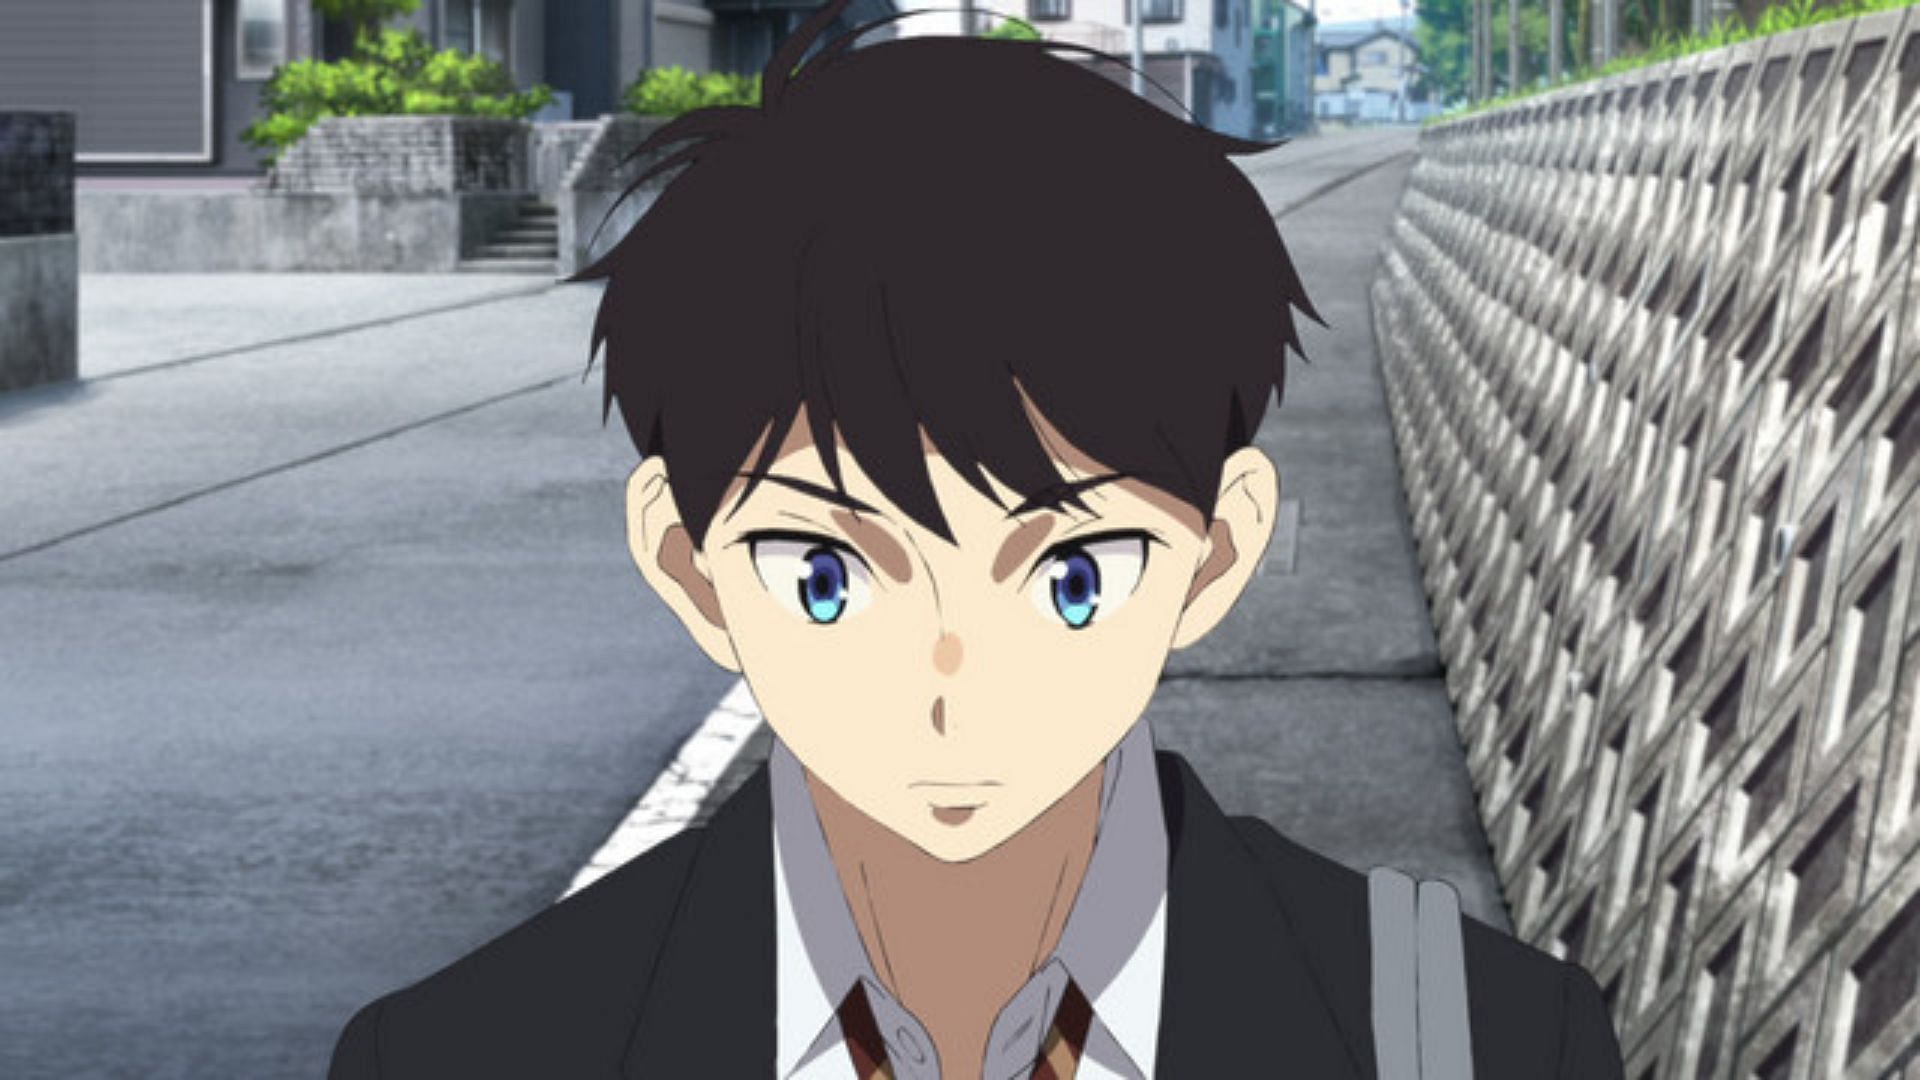 Haruka as shown in anime (Image via Studio Troyca)